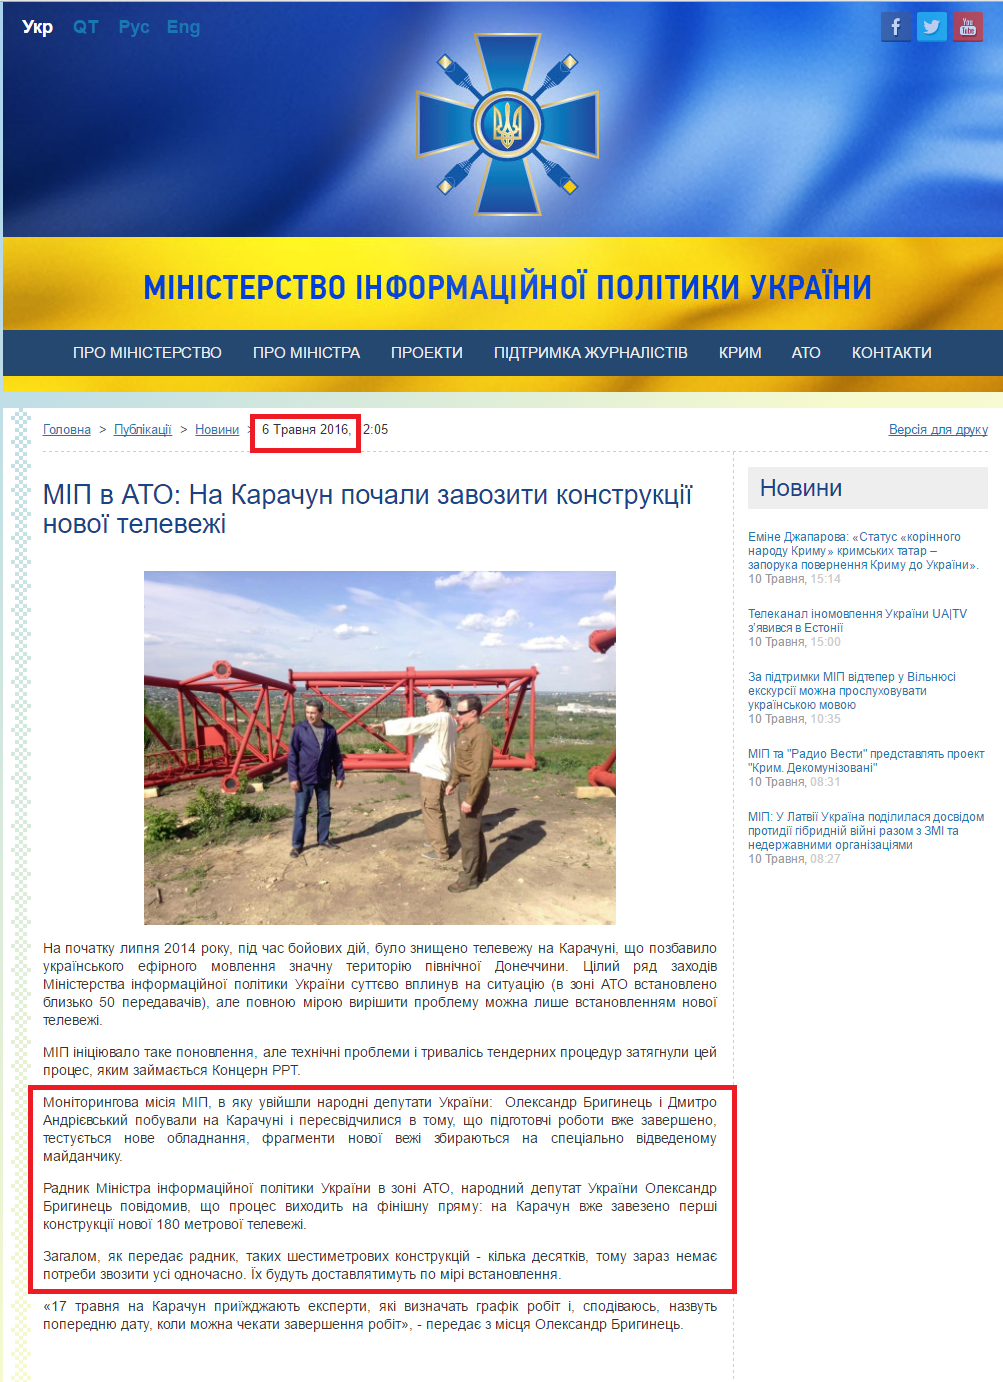 http://mip.gov.ua/news/1167.html